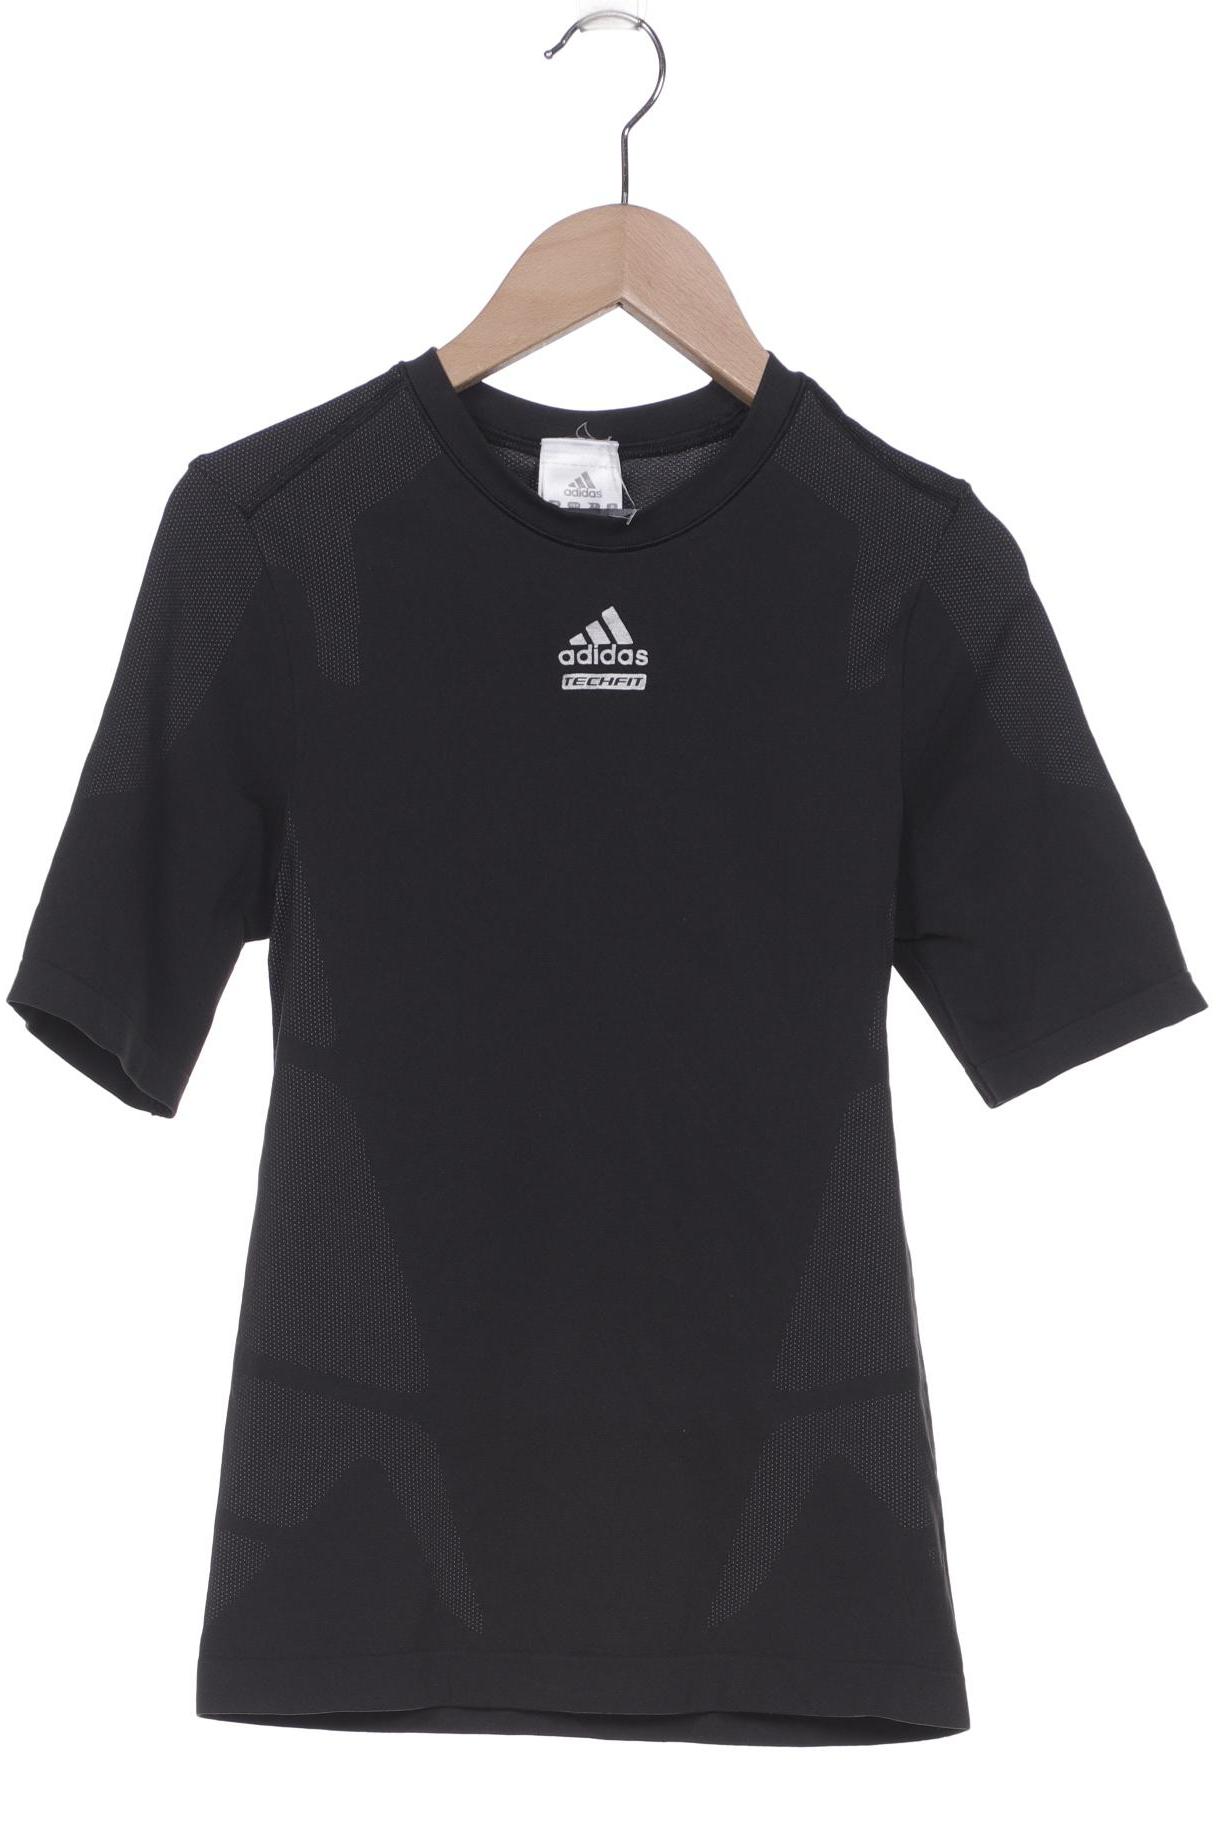 adidas Damen T-Shirt, schwarz von Adidas